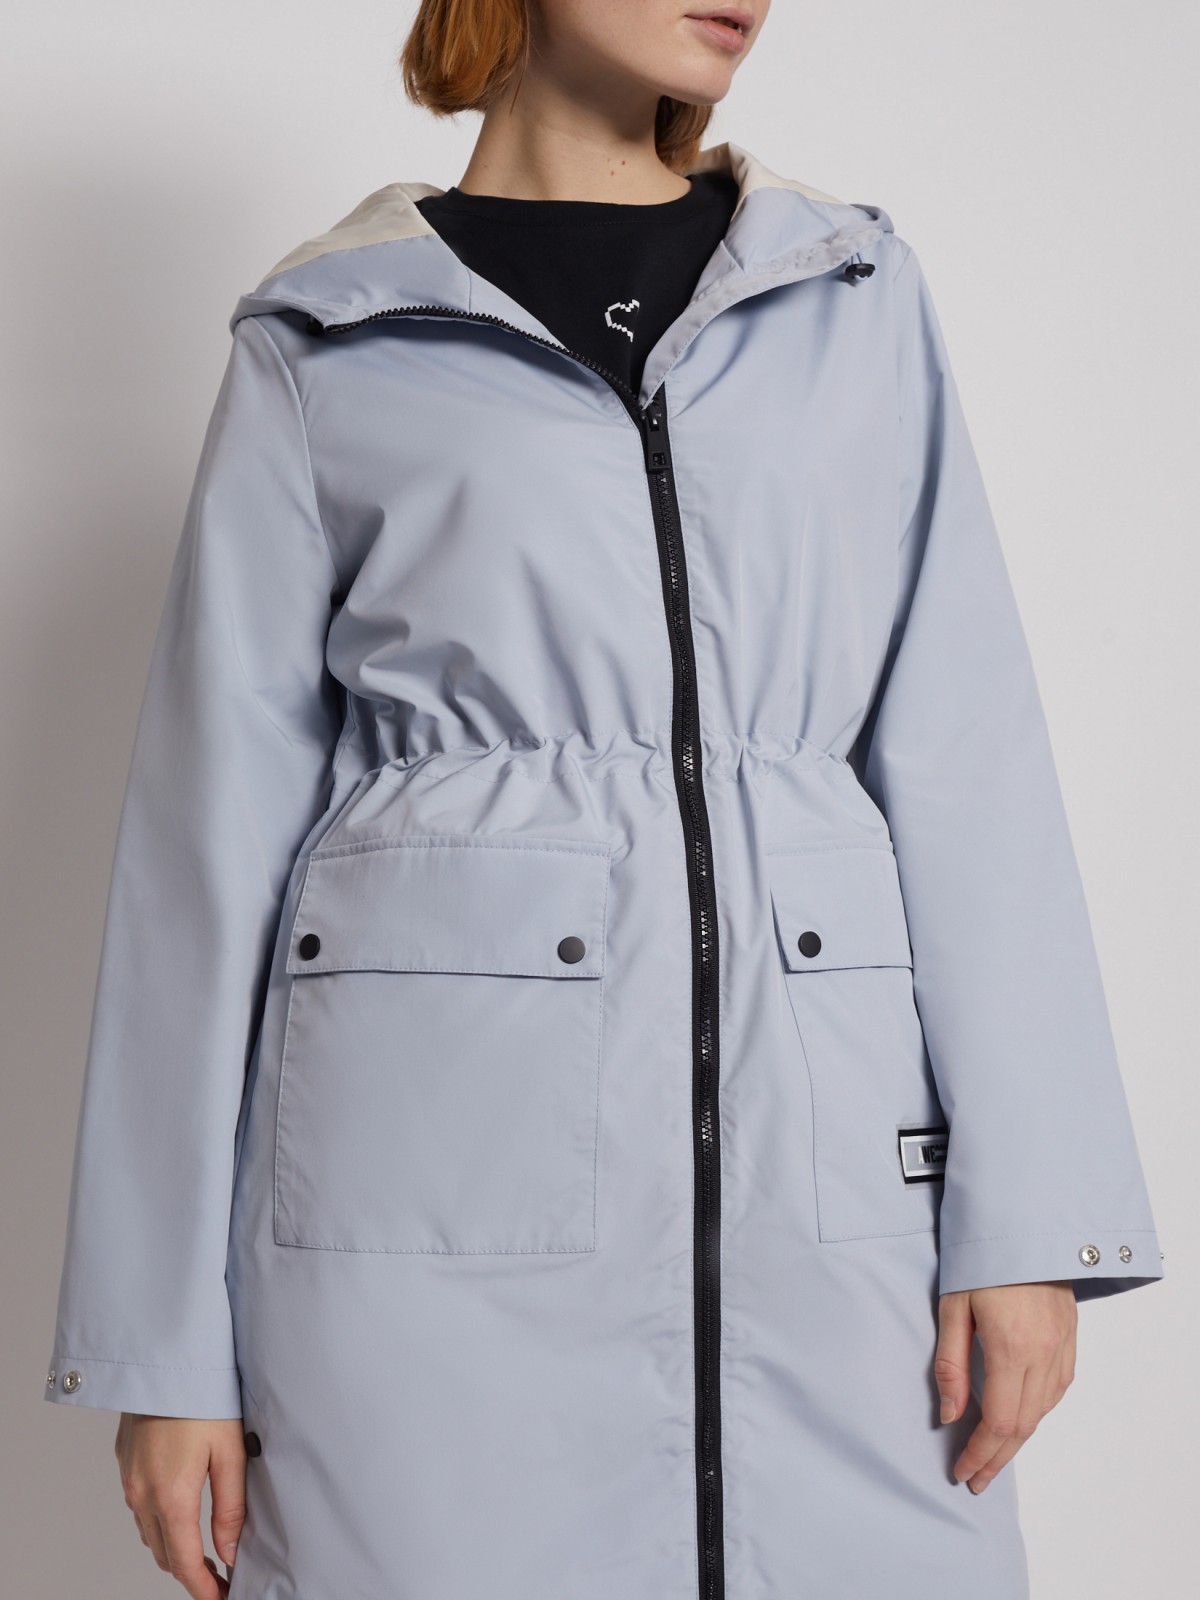 Куртка с капюшоном zolla 02221570L124, цвет светло-голубой, размер XS - фото 4